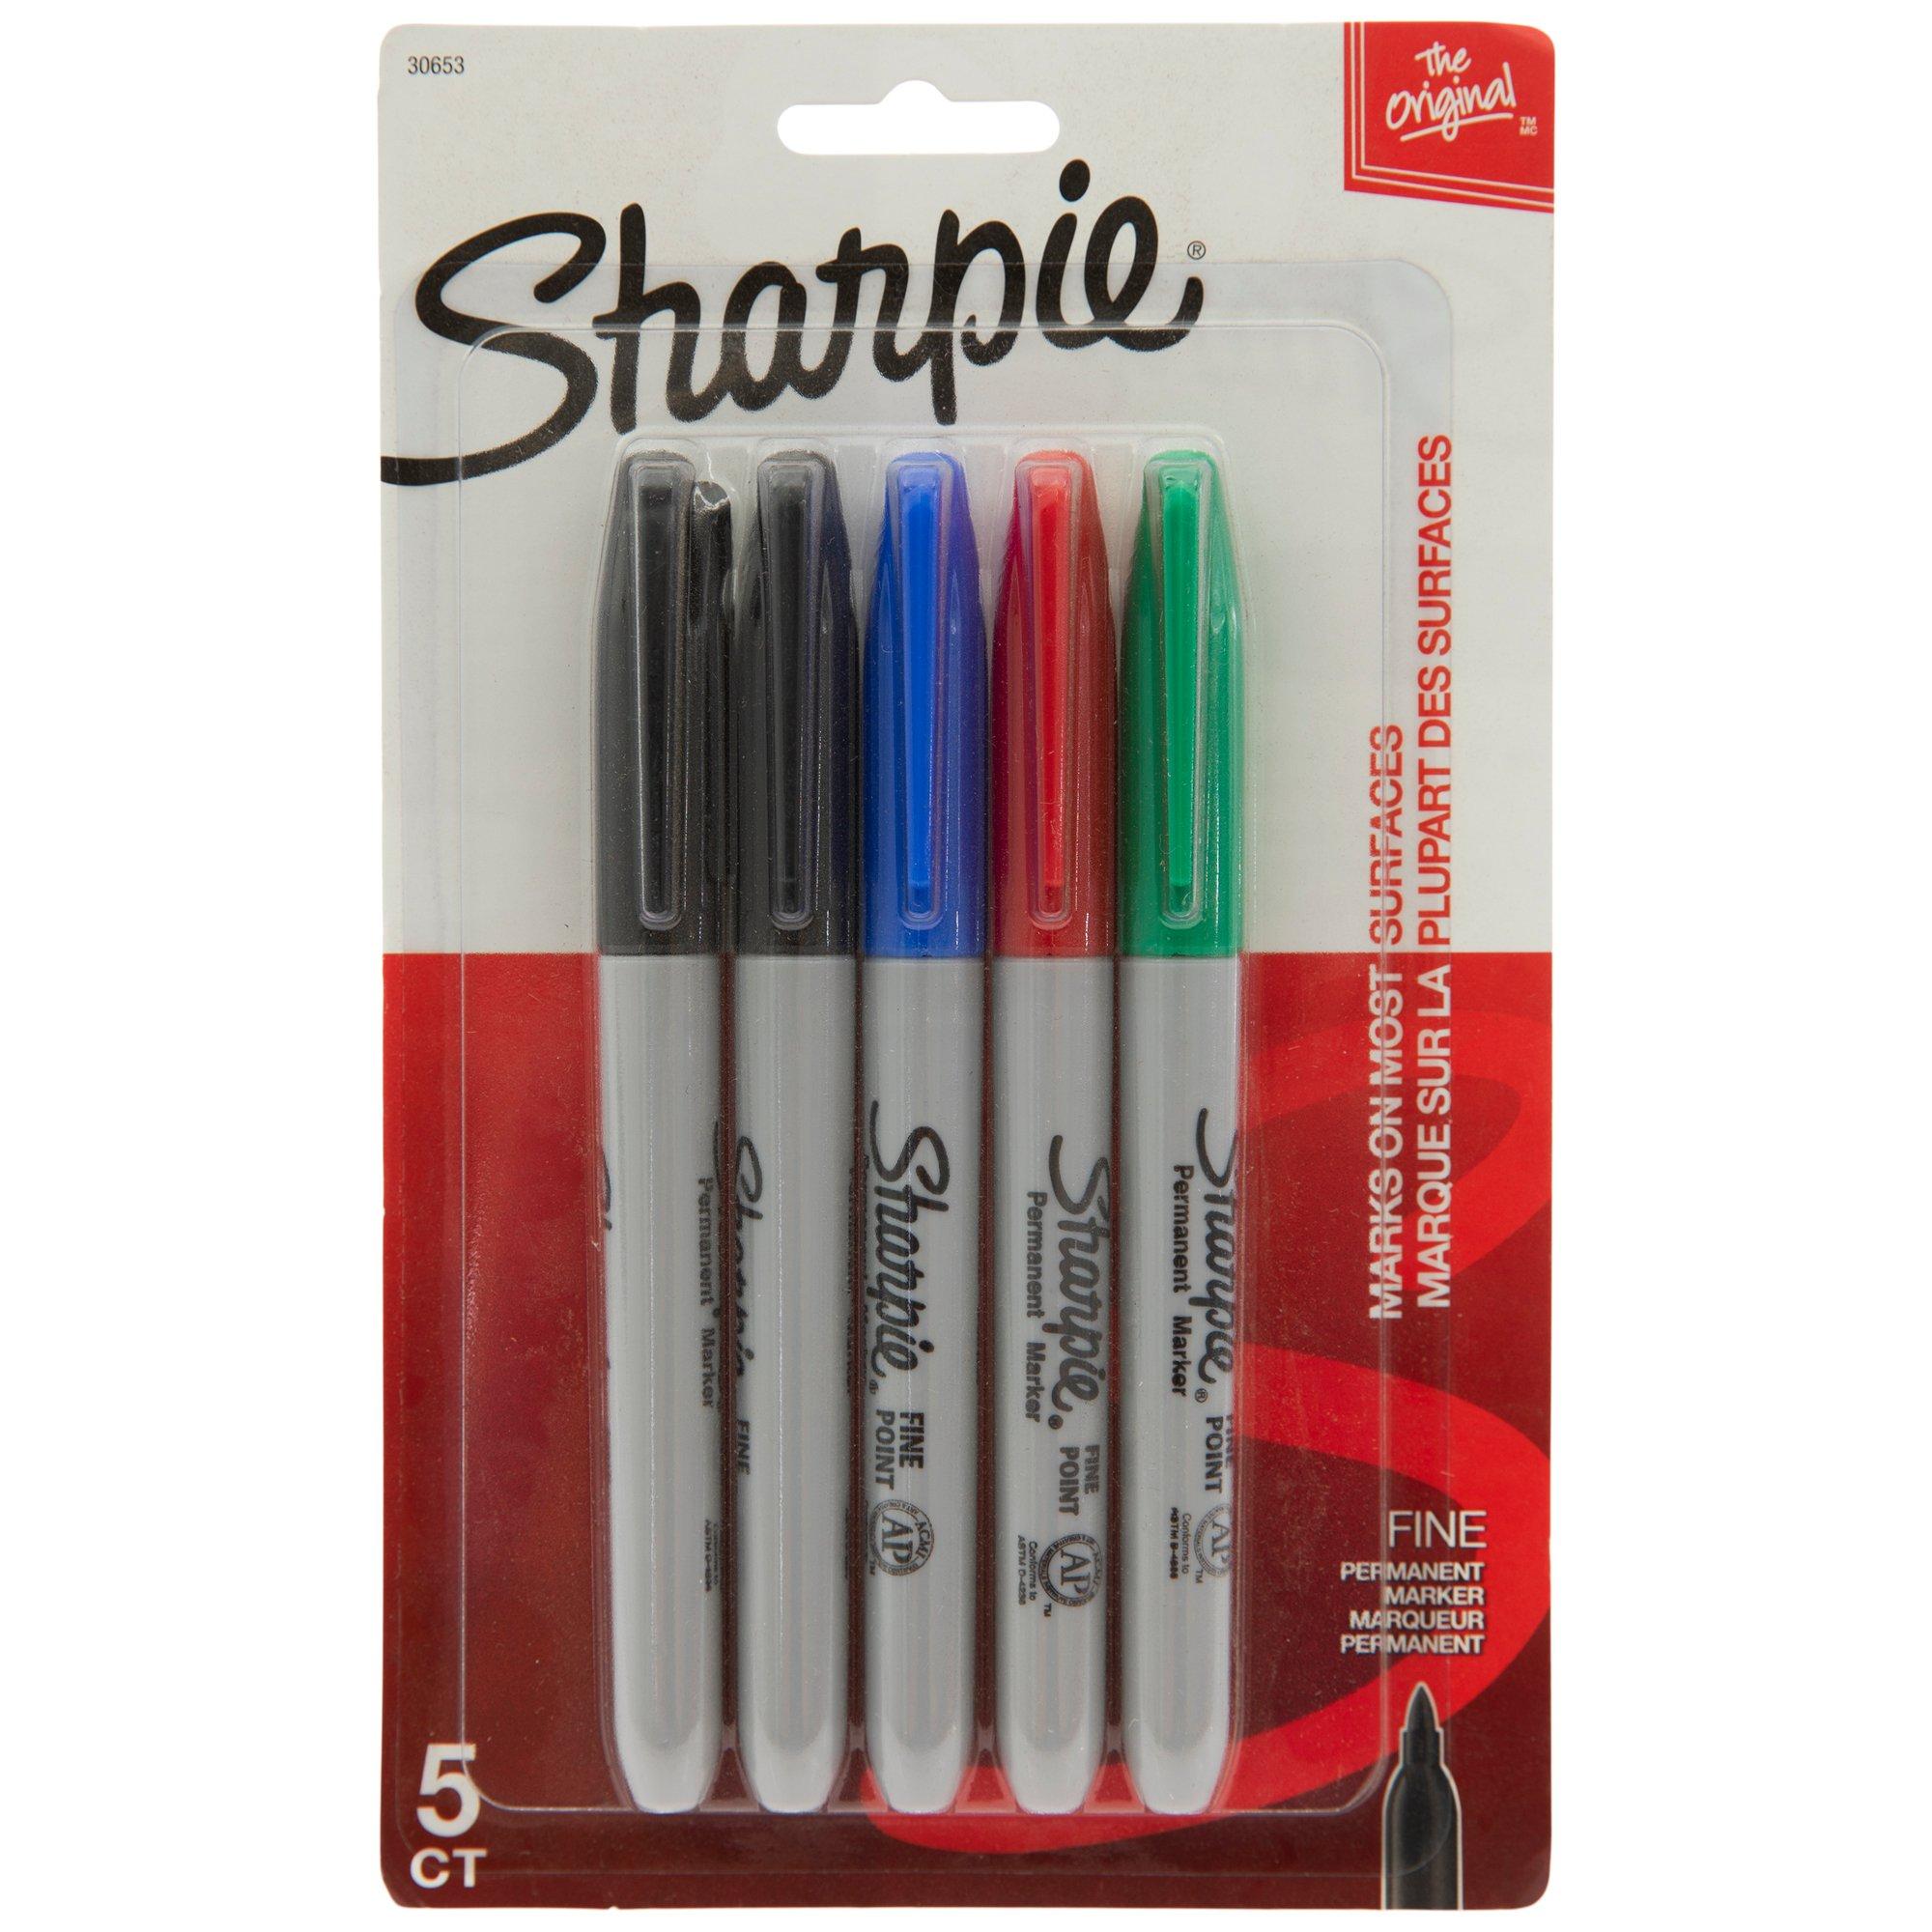 Sharpie Chalk markers 5 pack in Ipswich